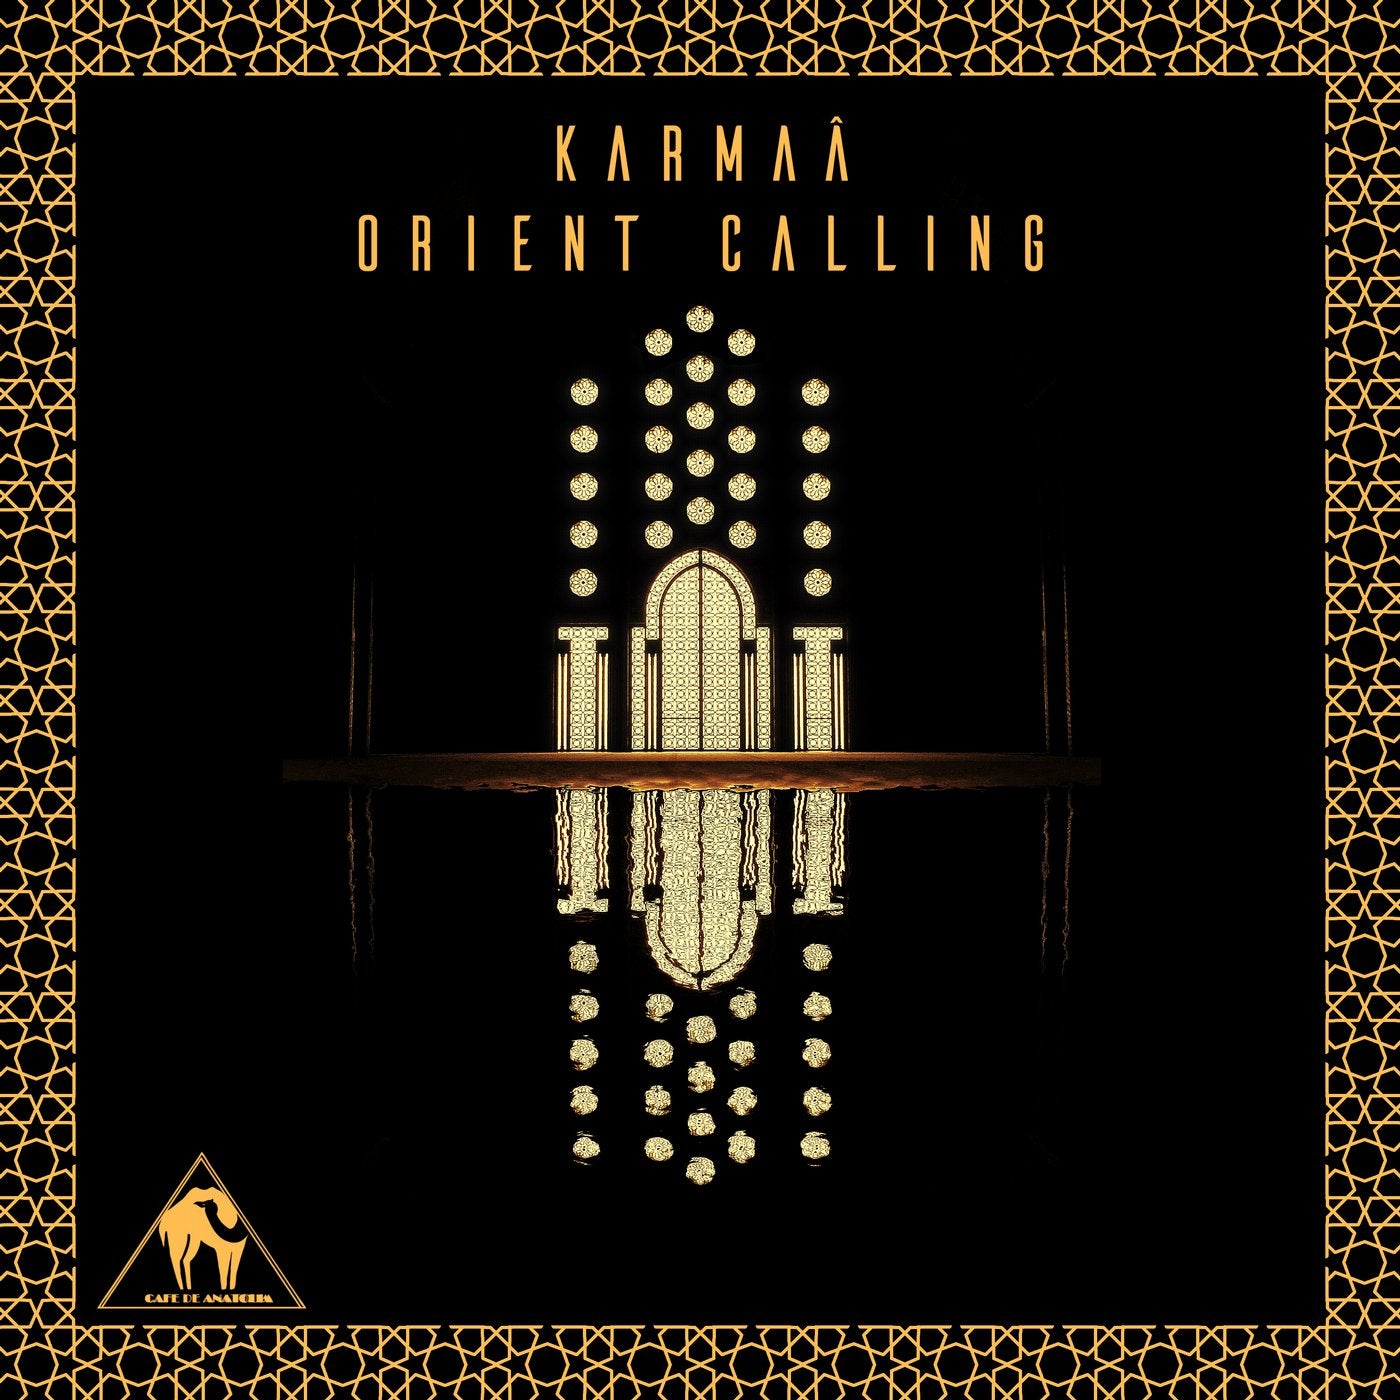 Orient Calling